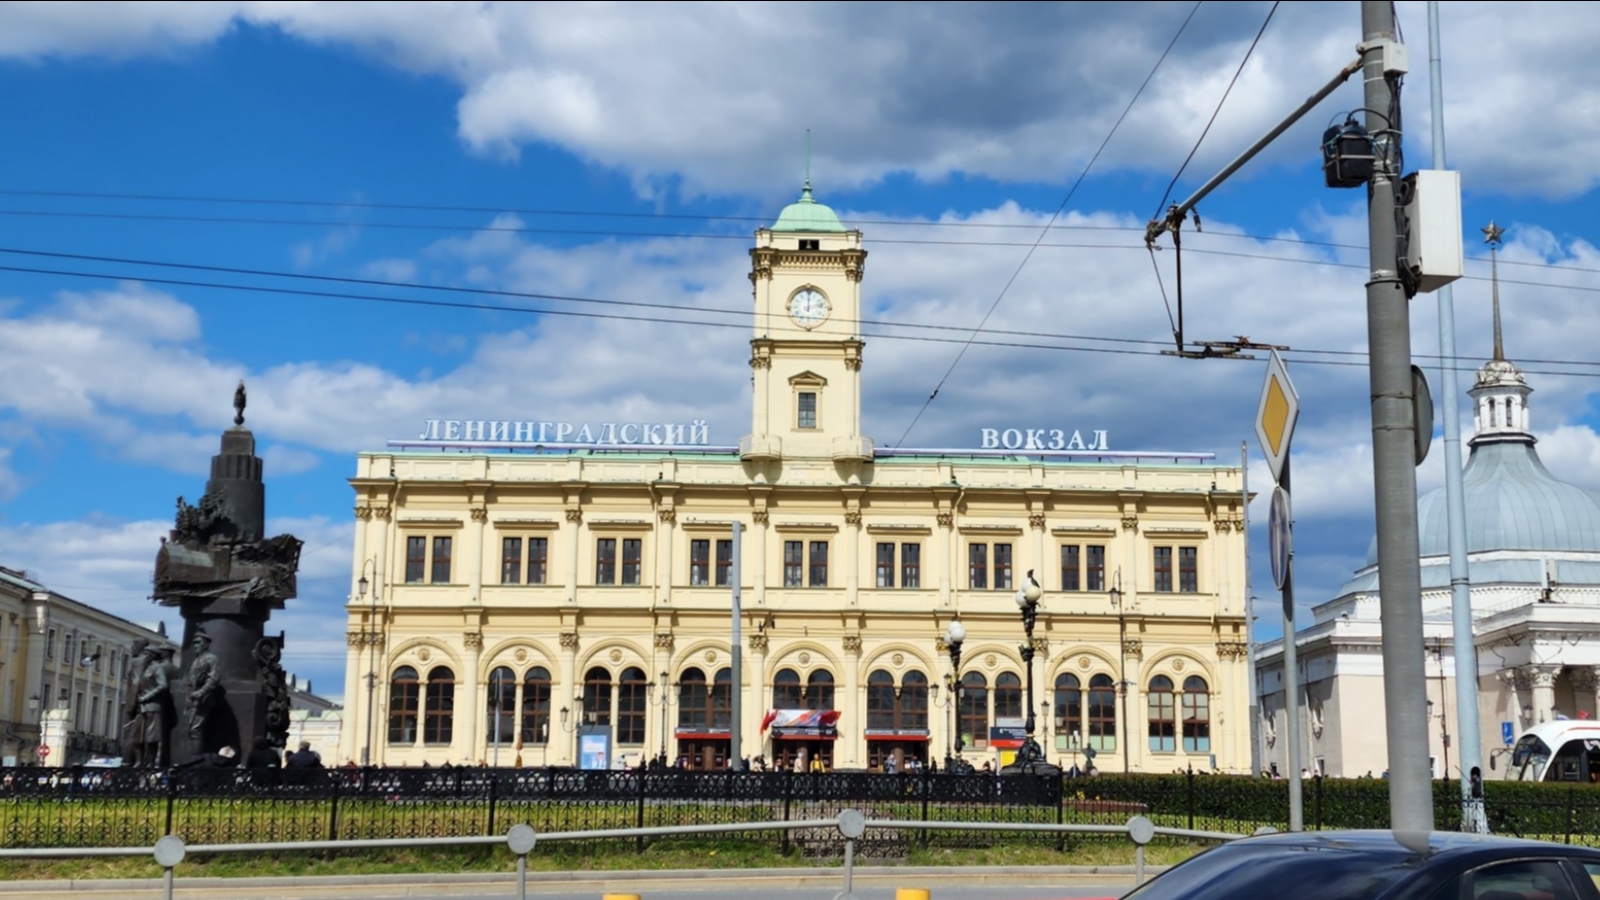 Ленинградский вокзал в Москве ждёт очередная реконструкция